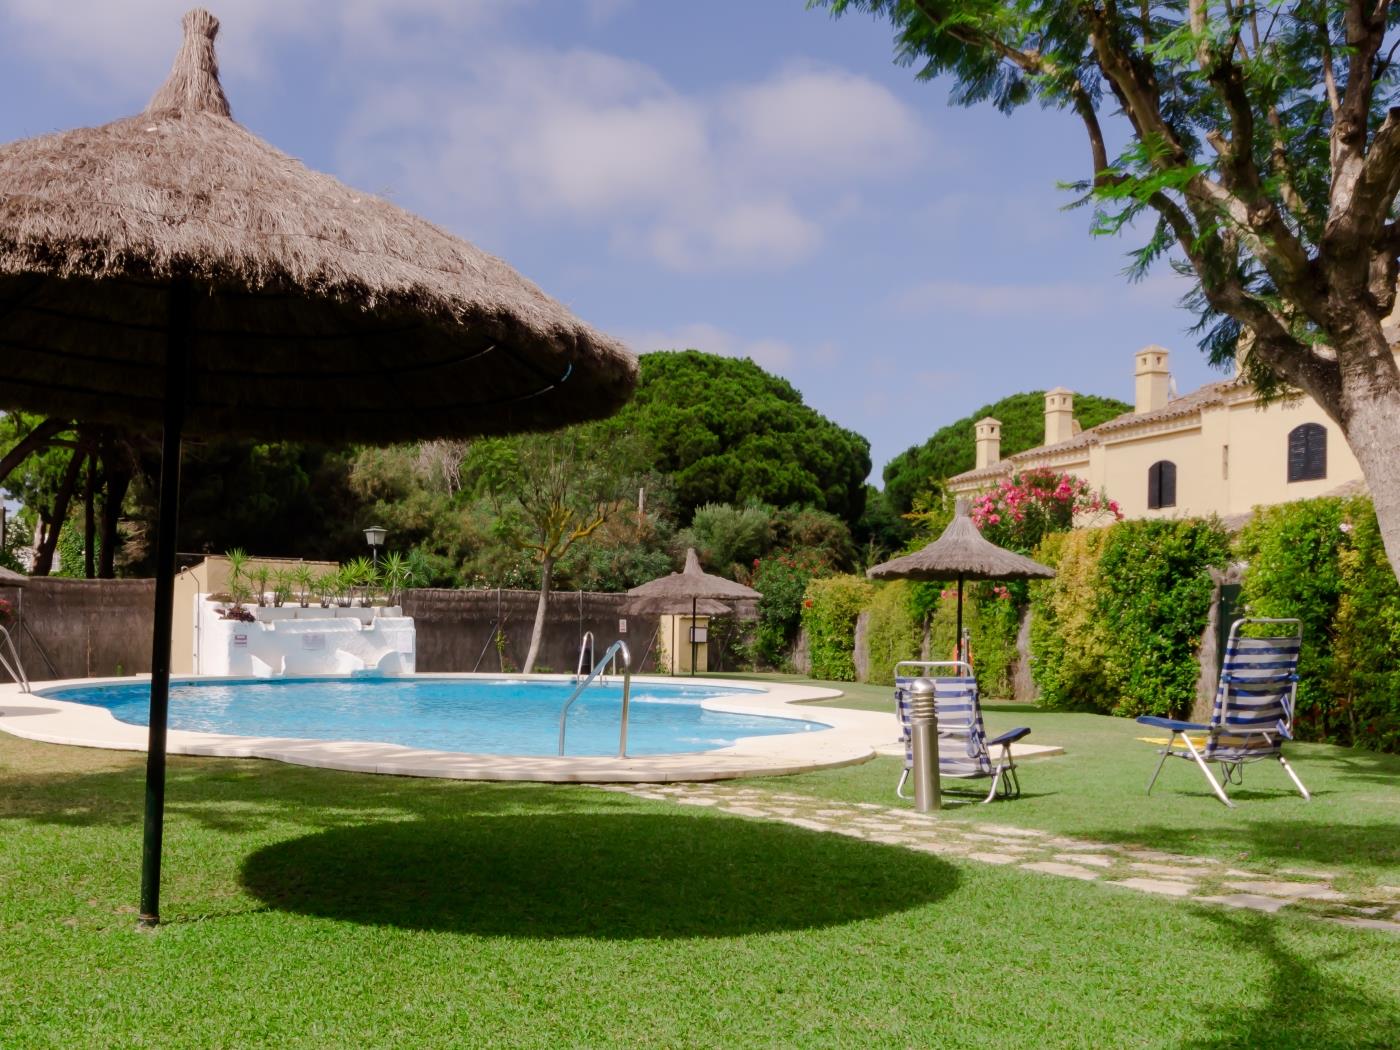 Villa with pool in El Manantial